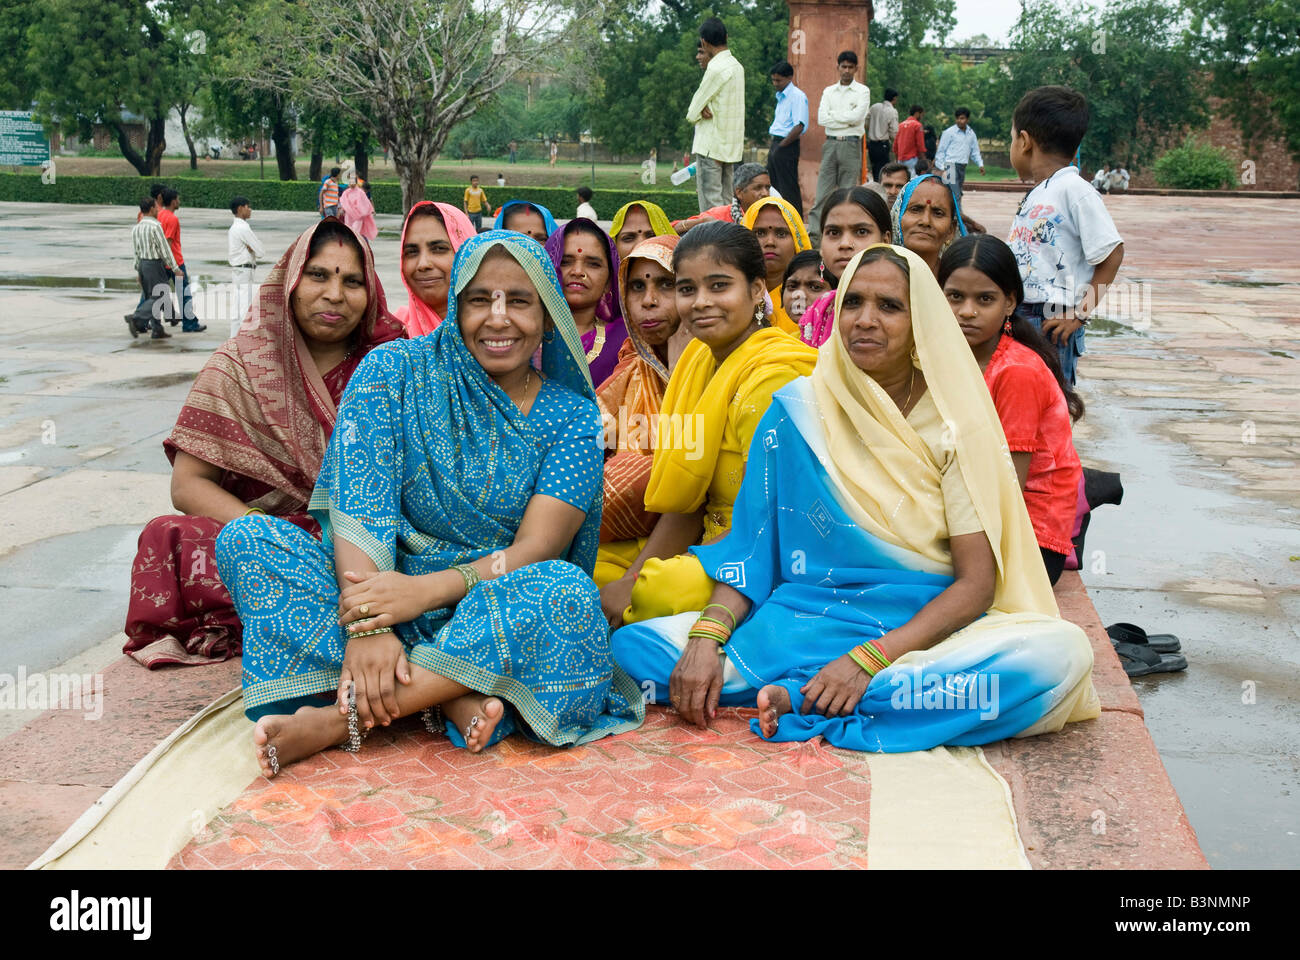 Inde Delhi Les femmes dans des vêtements traditionnels colorés dans un parc Banque D'Images